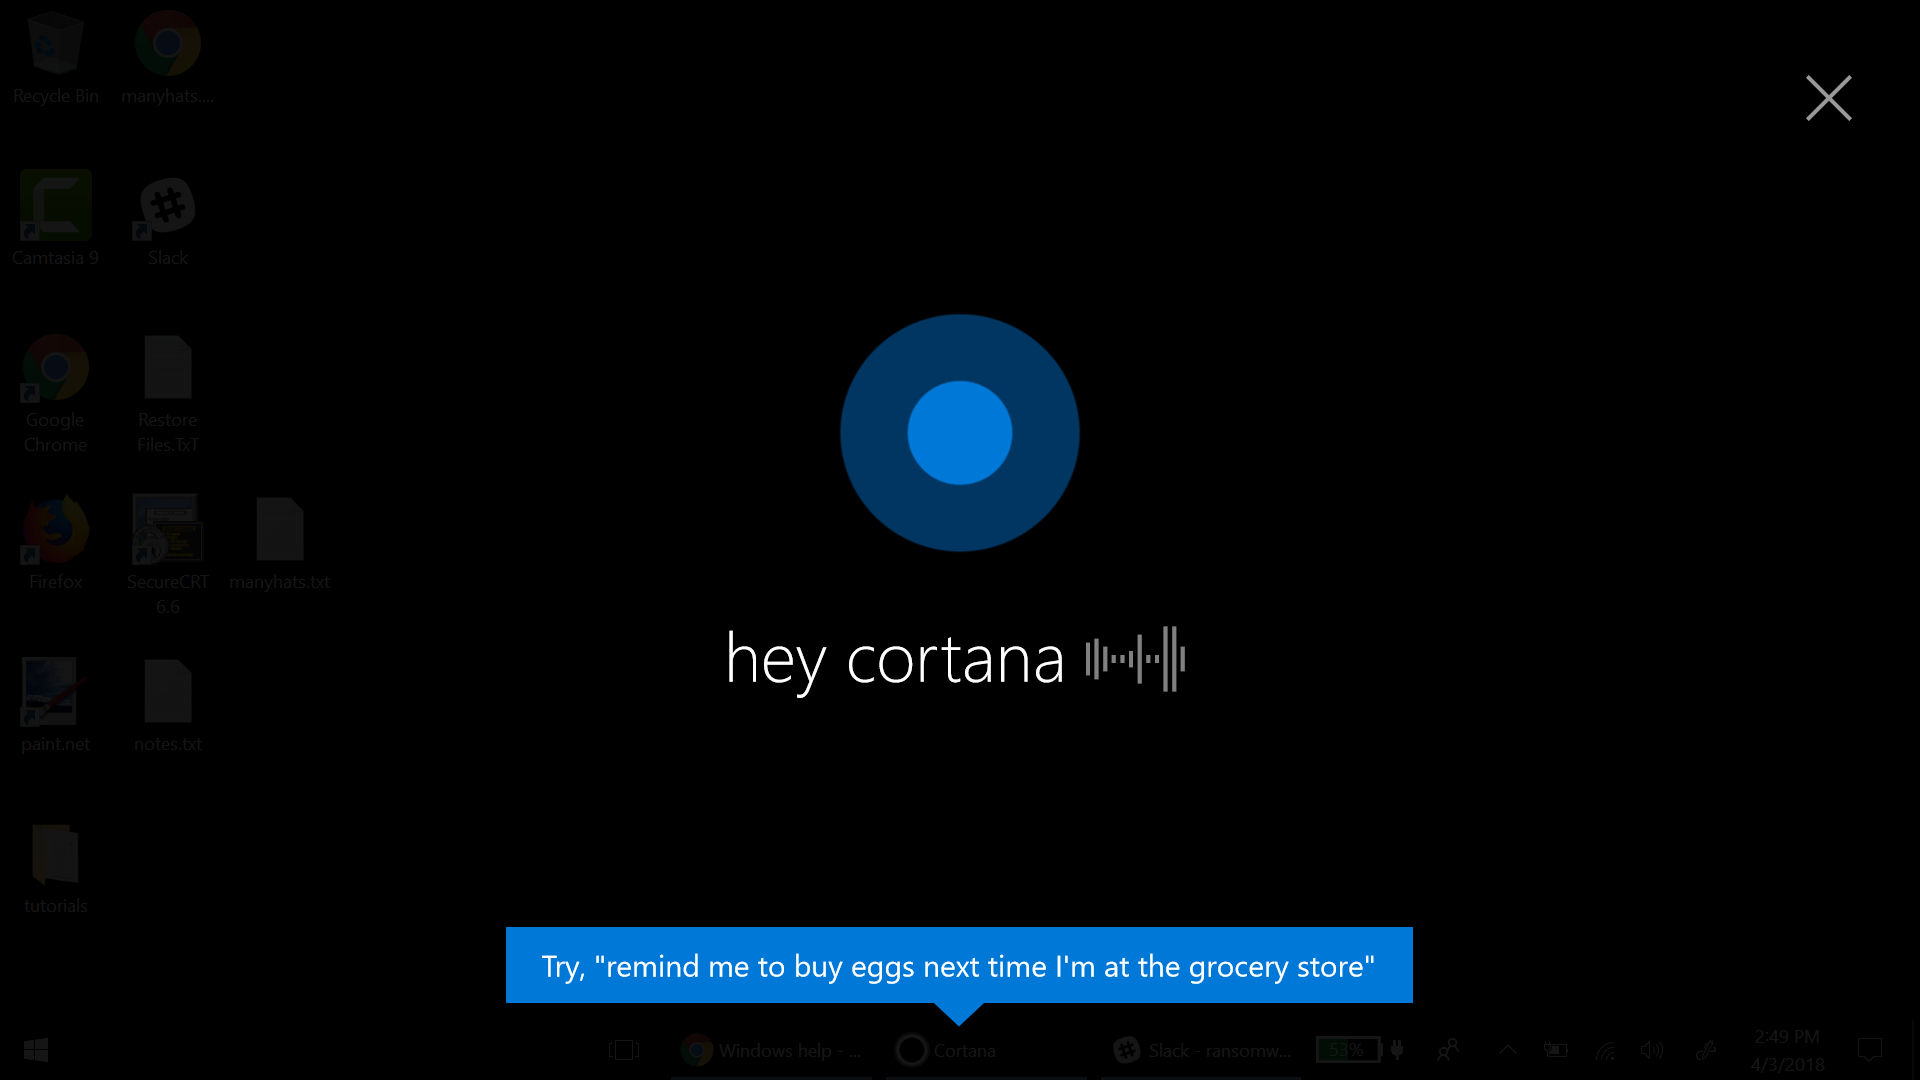 Windows 10da Sanal Asistan Olarak Cortana Kullanma 4